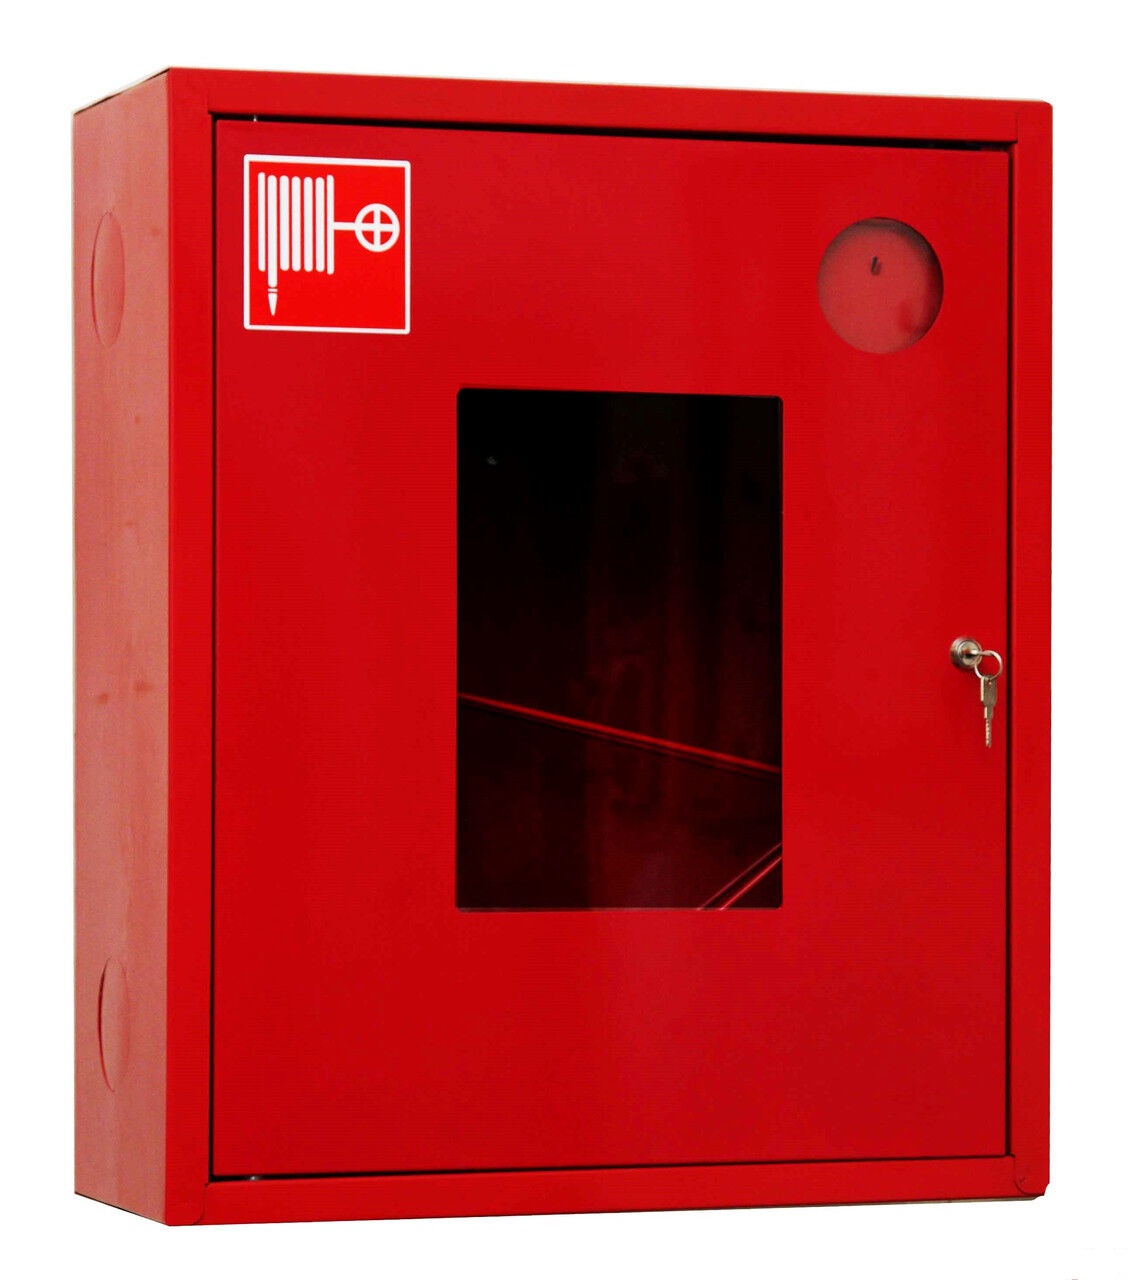 Сколько пожарных кранов. Шкаф пожарный ШПК-310н. Шкаф пожарный ШПК-310 НОК. Шкаф пожарный ШПК-310 НОБ. Шкаф пожарный ШПК-01 (ШПК-310) НОК (навесной, открытый, красный).